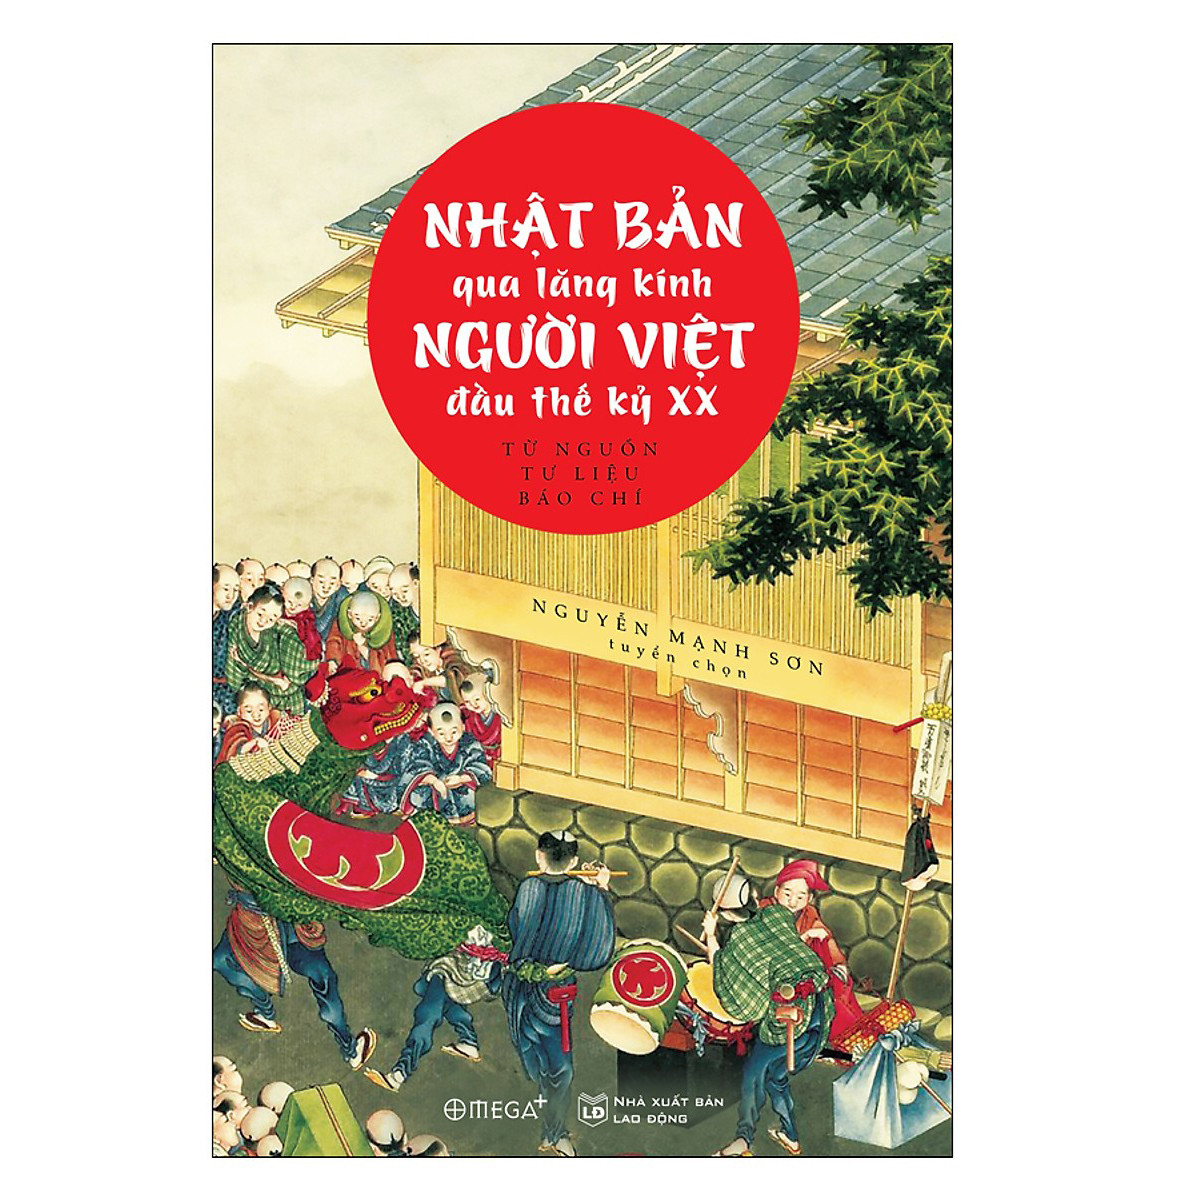 Cuốn Sách Hay Nhất Lược Sử Nhật Bản Thế kỷ XX: Nhật Bản Qua Lăng Kính Người Việt